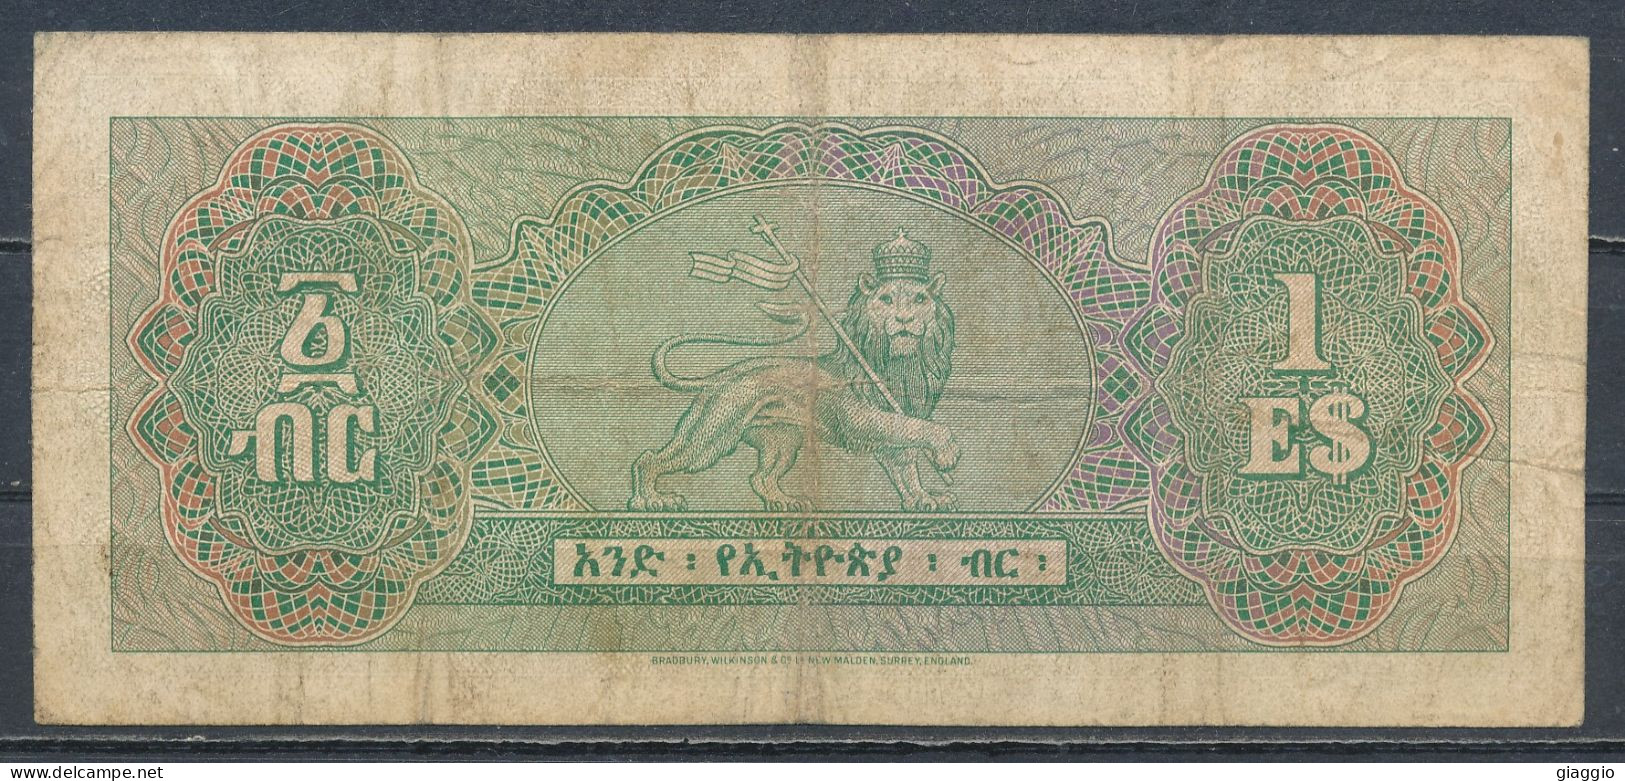 °°° ETHIOPIA 1 DOLLAR 1961 °°° - Ethiopia